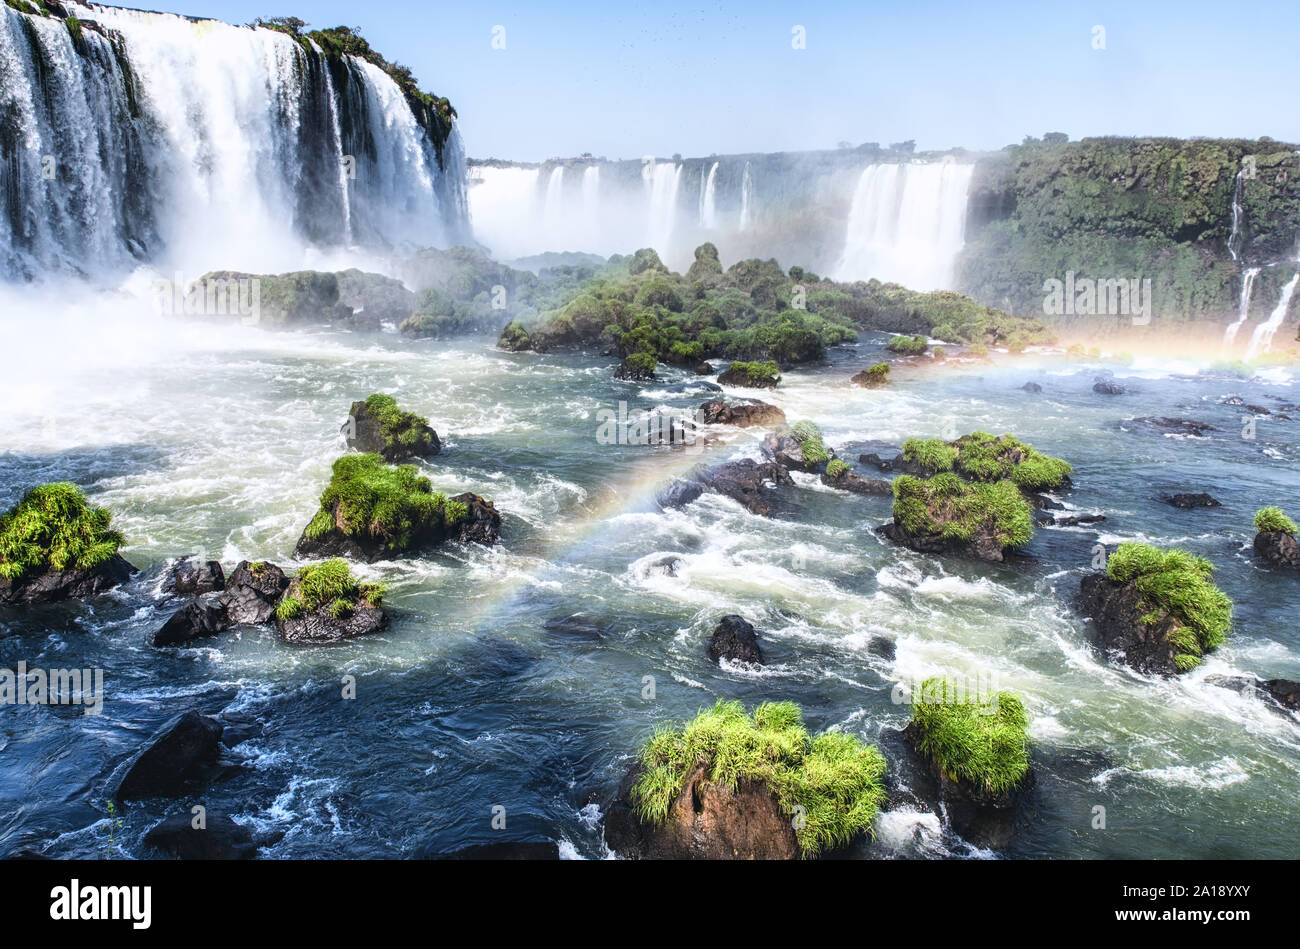 Cataratas do Iguaçu sont les cascades de la rivière Iguazu,Ensemble, ils forment le plus grand système de cascade dans le monde Banque D'Images